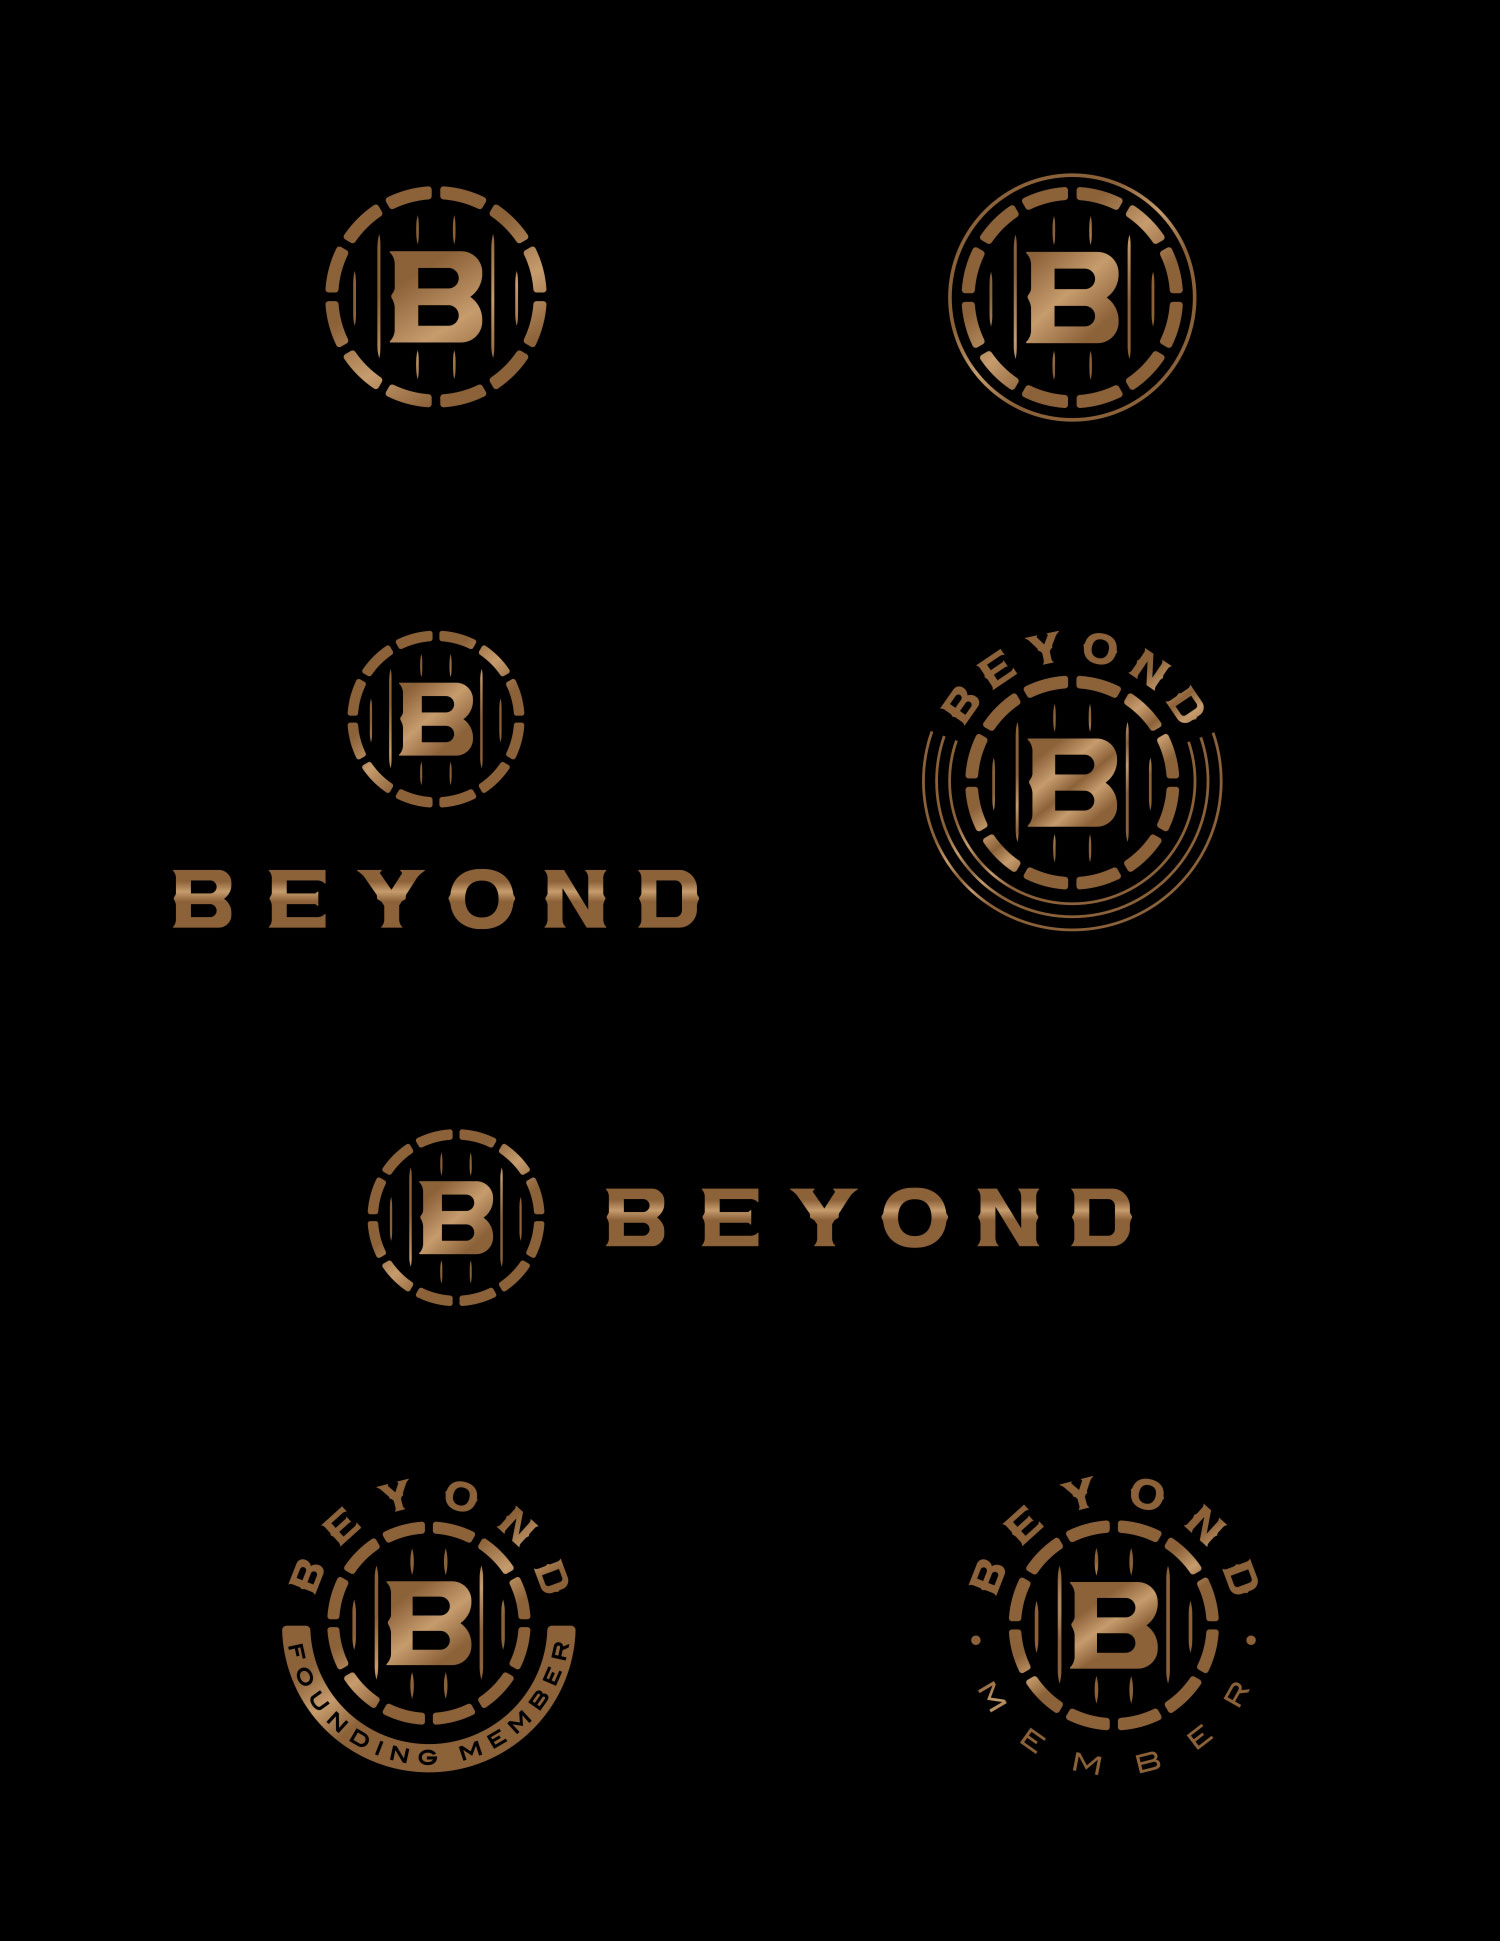 Beyond logo final lockups